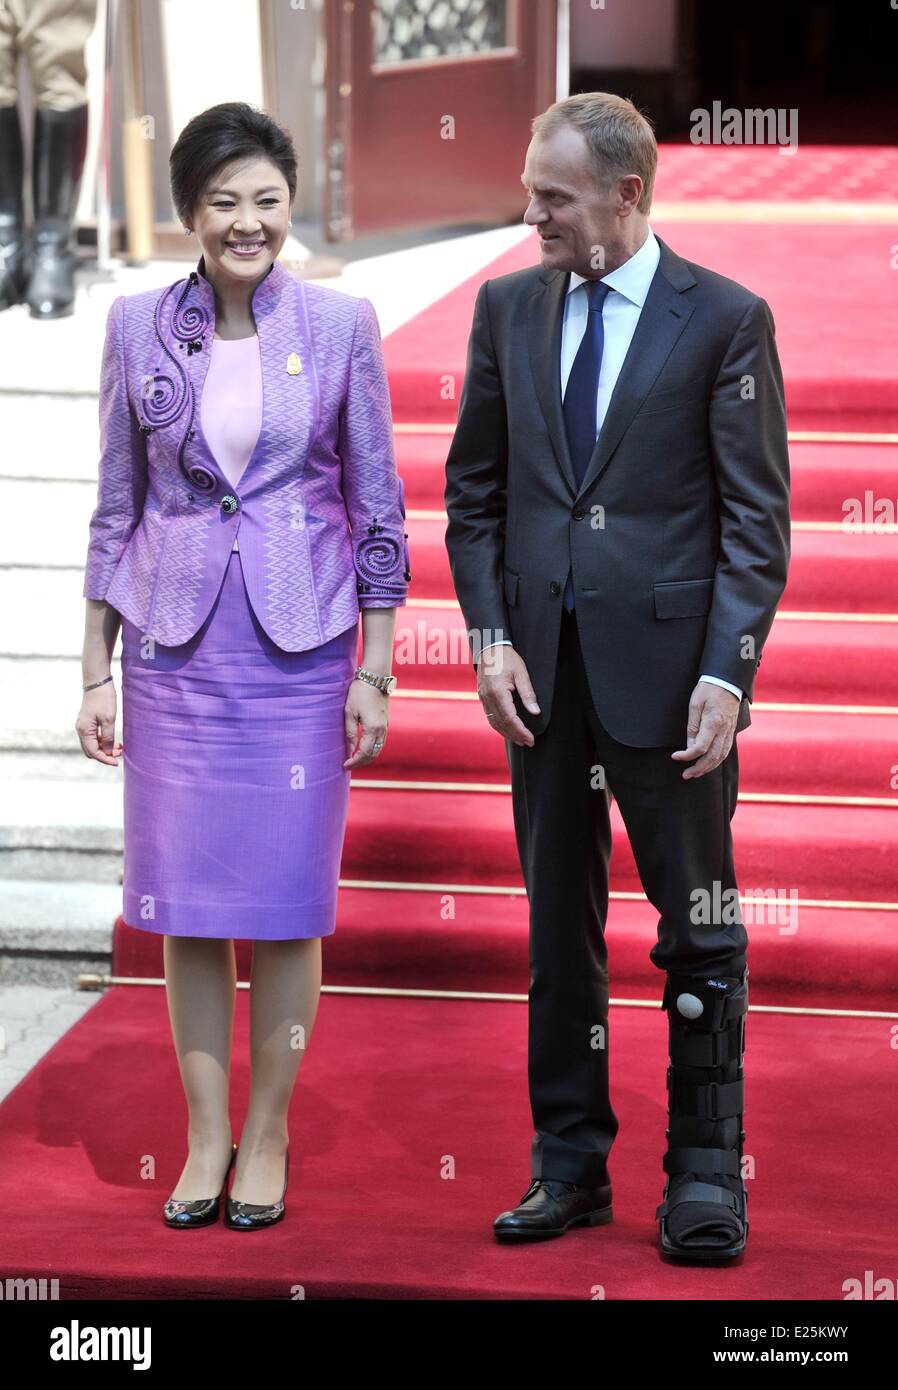 Premierminister von Thailand Yingluck Shinawatra wird begrüßt von der Premierminister von Polen Donald Tusk bei einem Besuch in Warschau Featuring: Donald Tusk, Yingluck Shinawatra wo: Warschau, Polen bei: 4. Juli 2013 Stockfoto